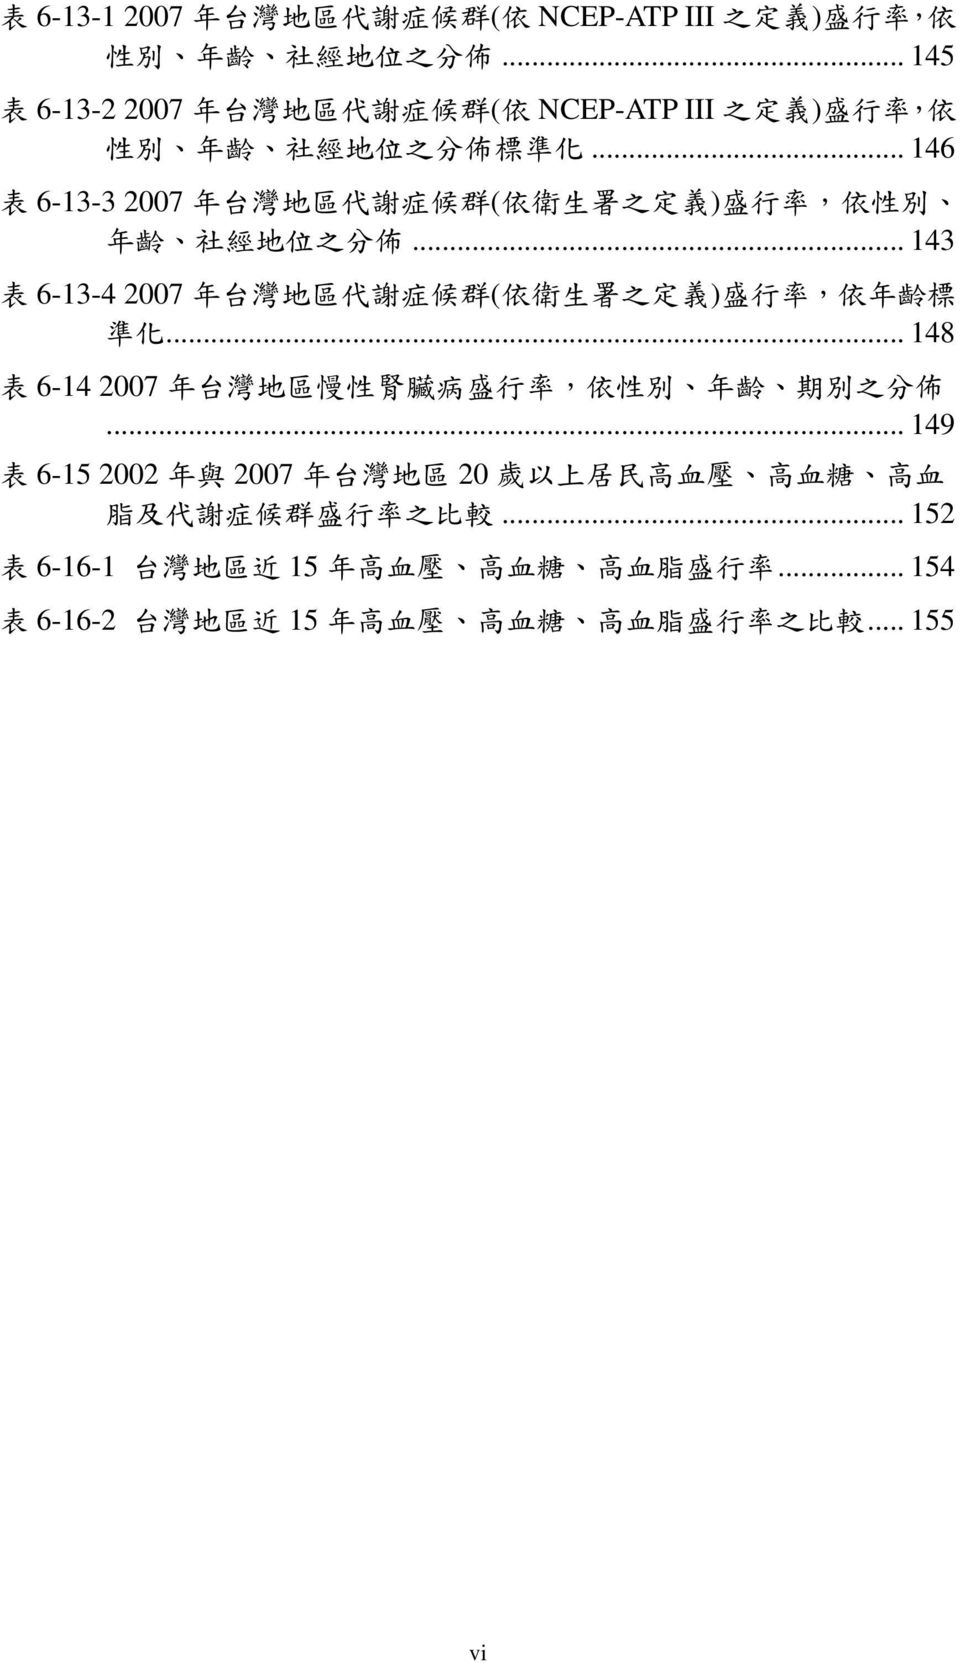 .. 46 表 6-3-3 2007 年 台 灣 地 區 代 謝 症 候 群 ( 依 衛 生 署 之 定 義 ) 盛 行 率, 依 性 別 年 齡 社 經 地 位 之 分 佈.